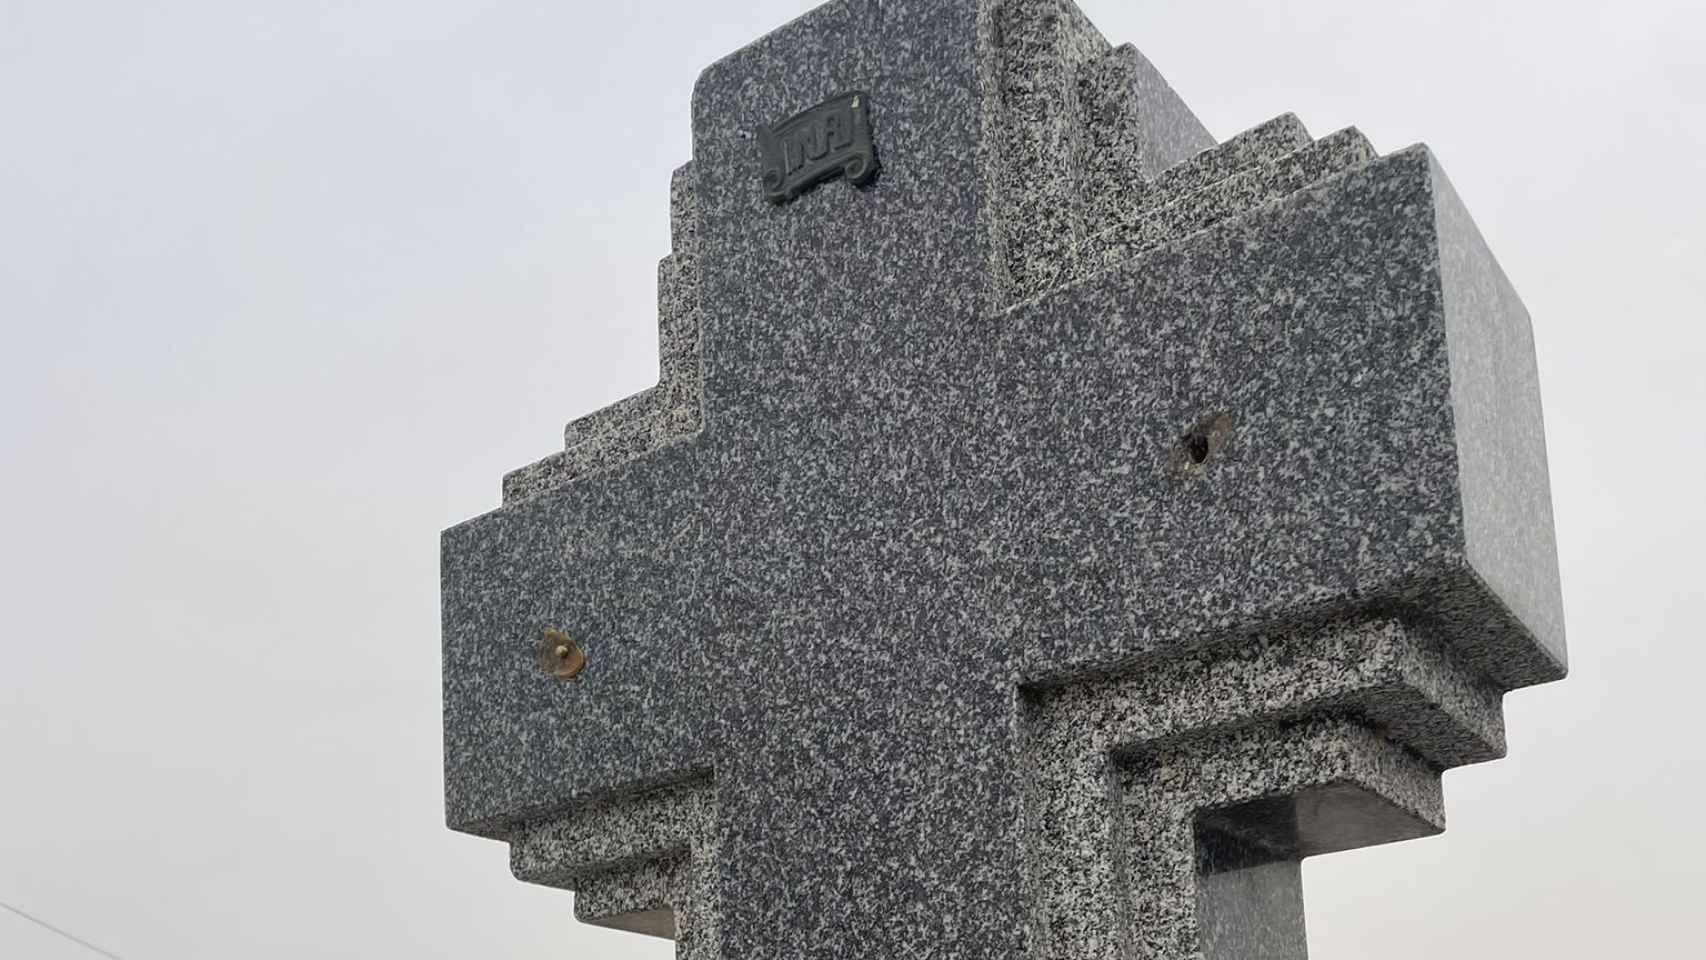 Los ladrones han arrancado los crucifijos metálicos de decenas de lápidas.